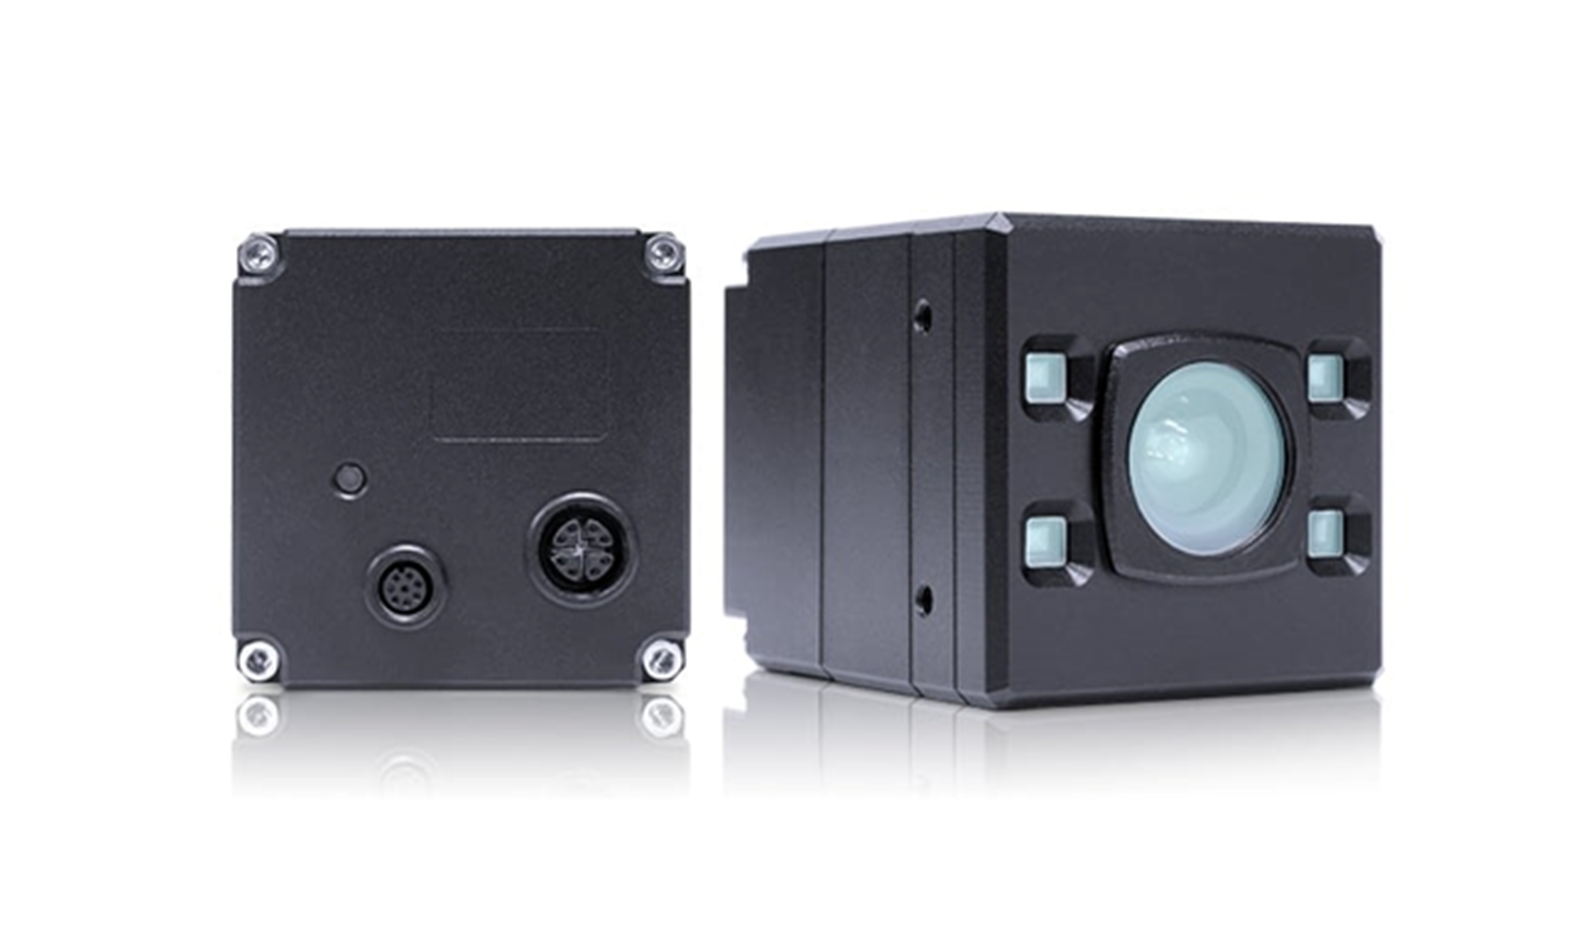 SVD Industrial High-Resolution Cameras